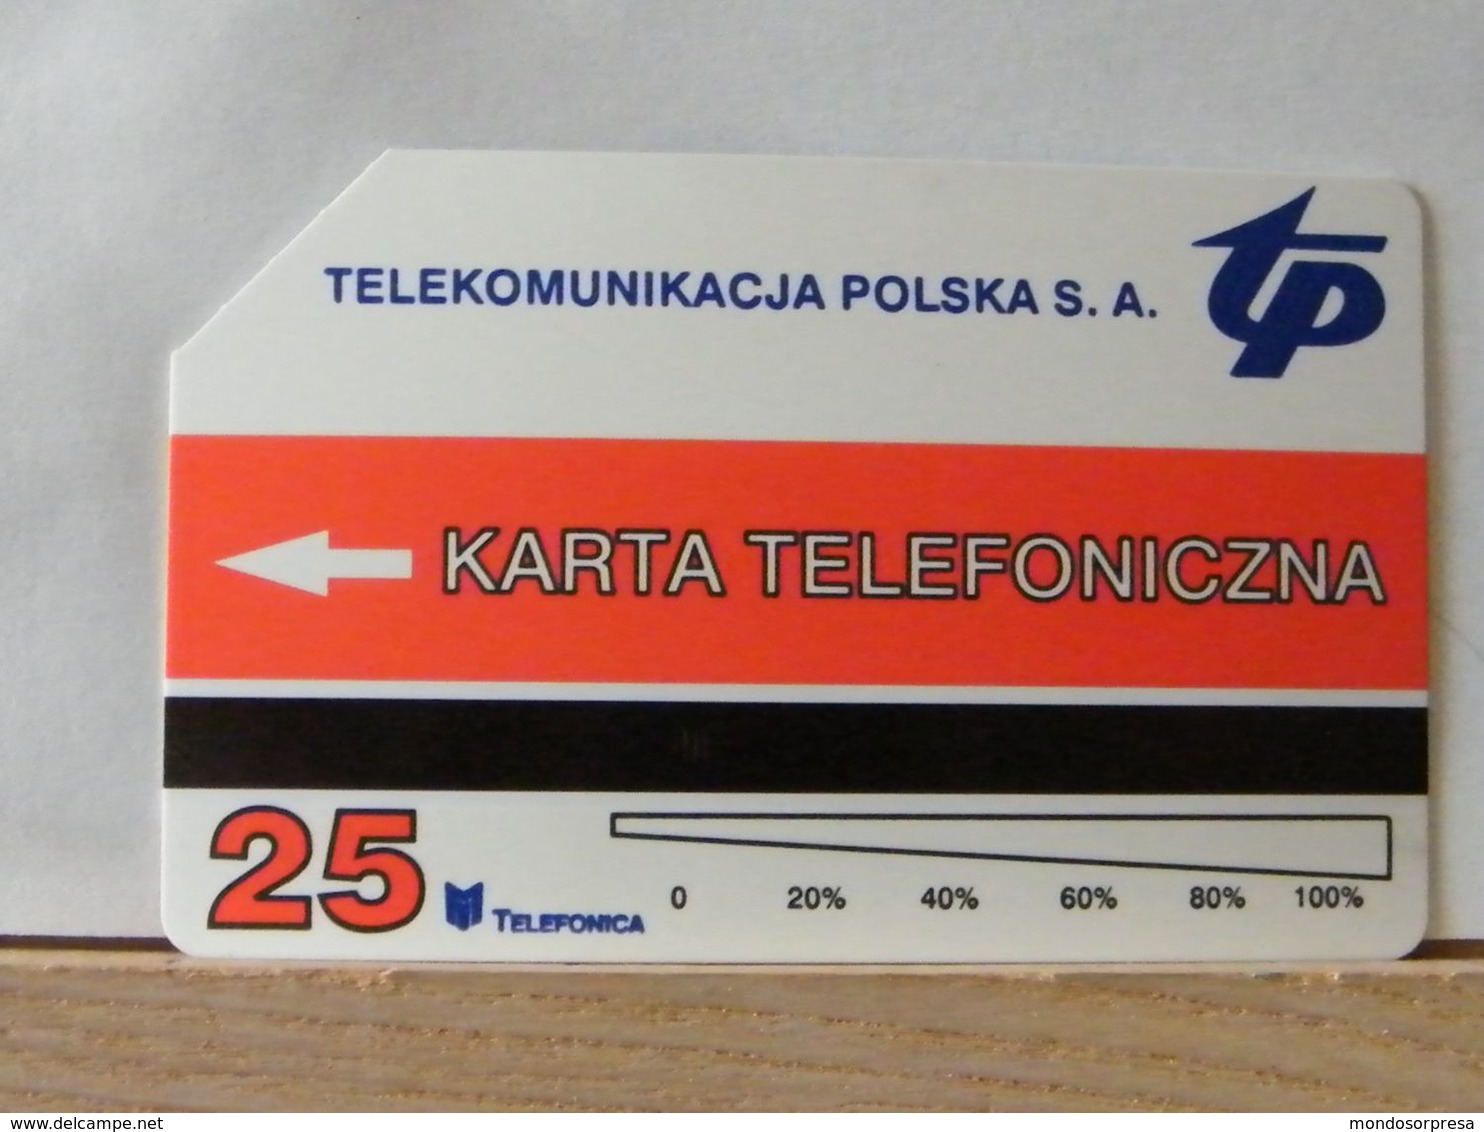 PO103 - POLONIA - POLSKA , URMET - 25 -  PROMOZIONE CENTRO TELECOMUNICAZIONE TP 1997 - Pologne